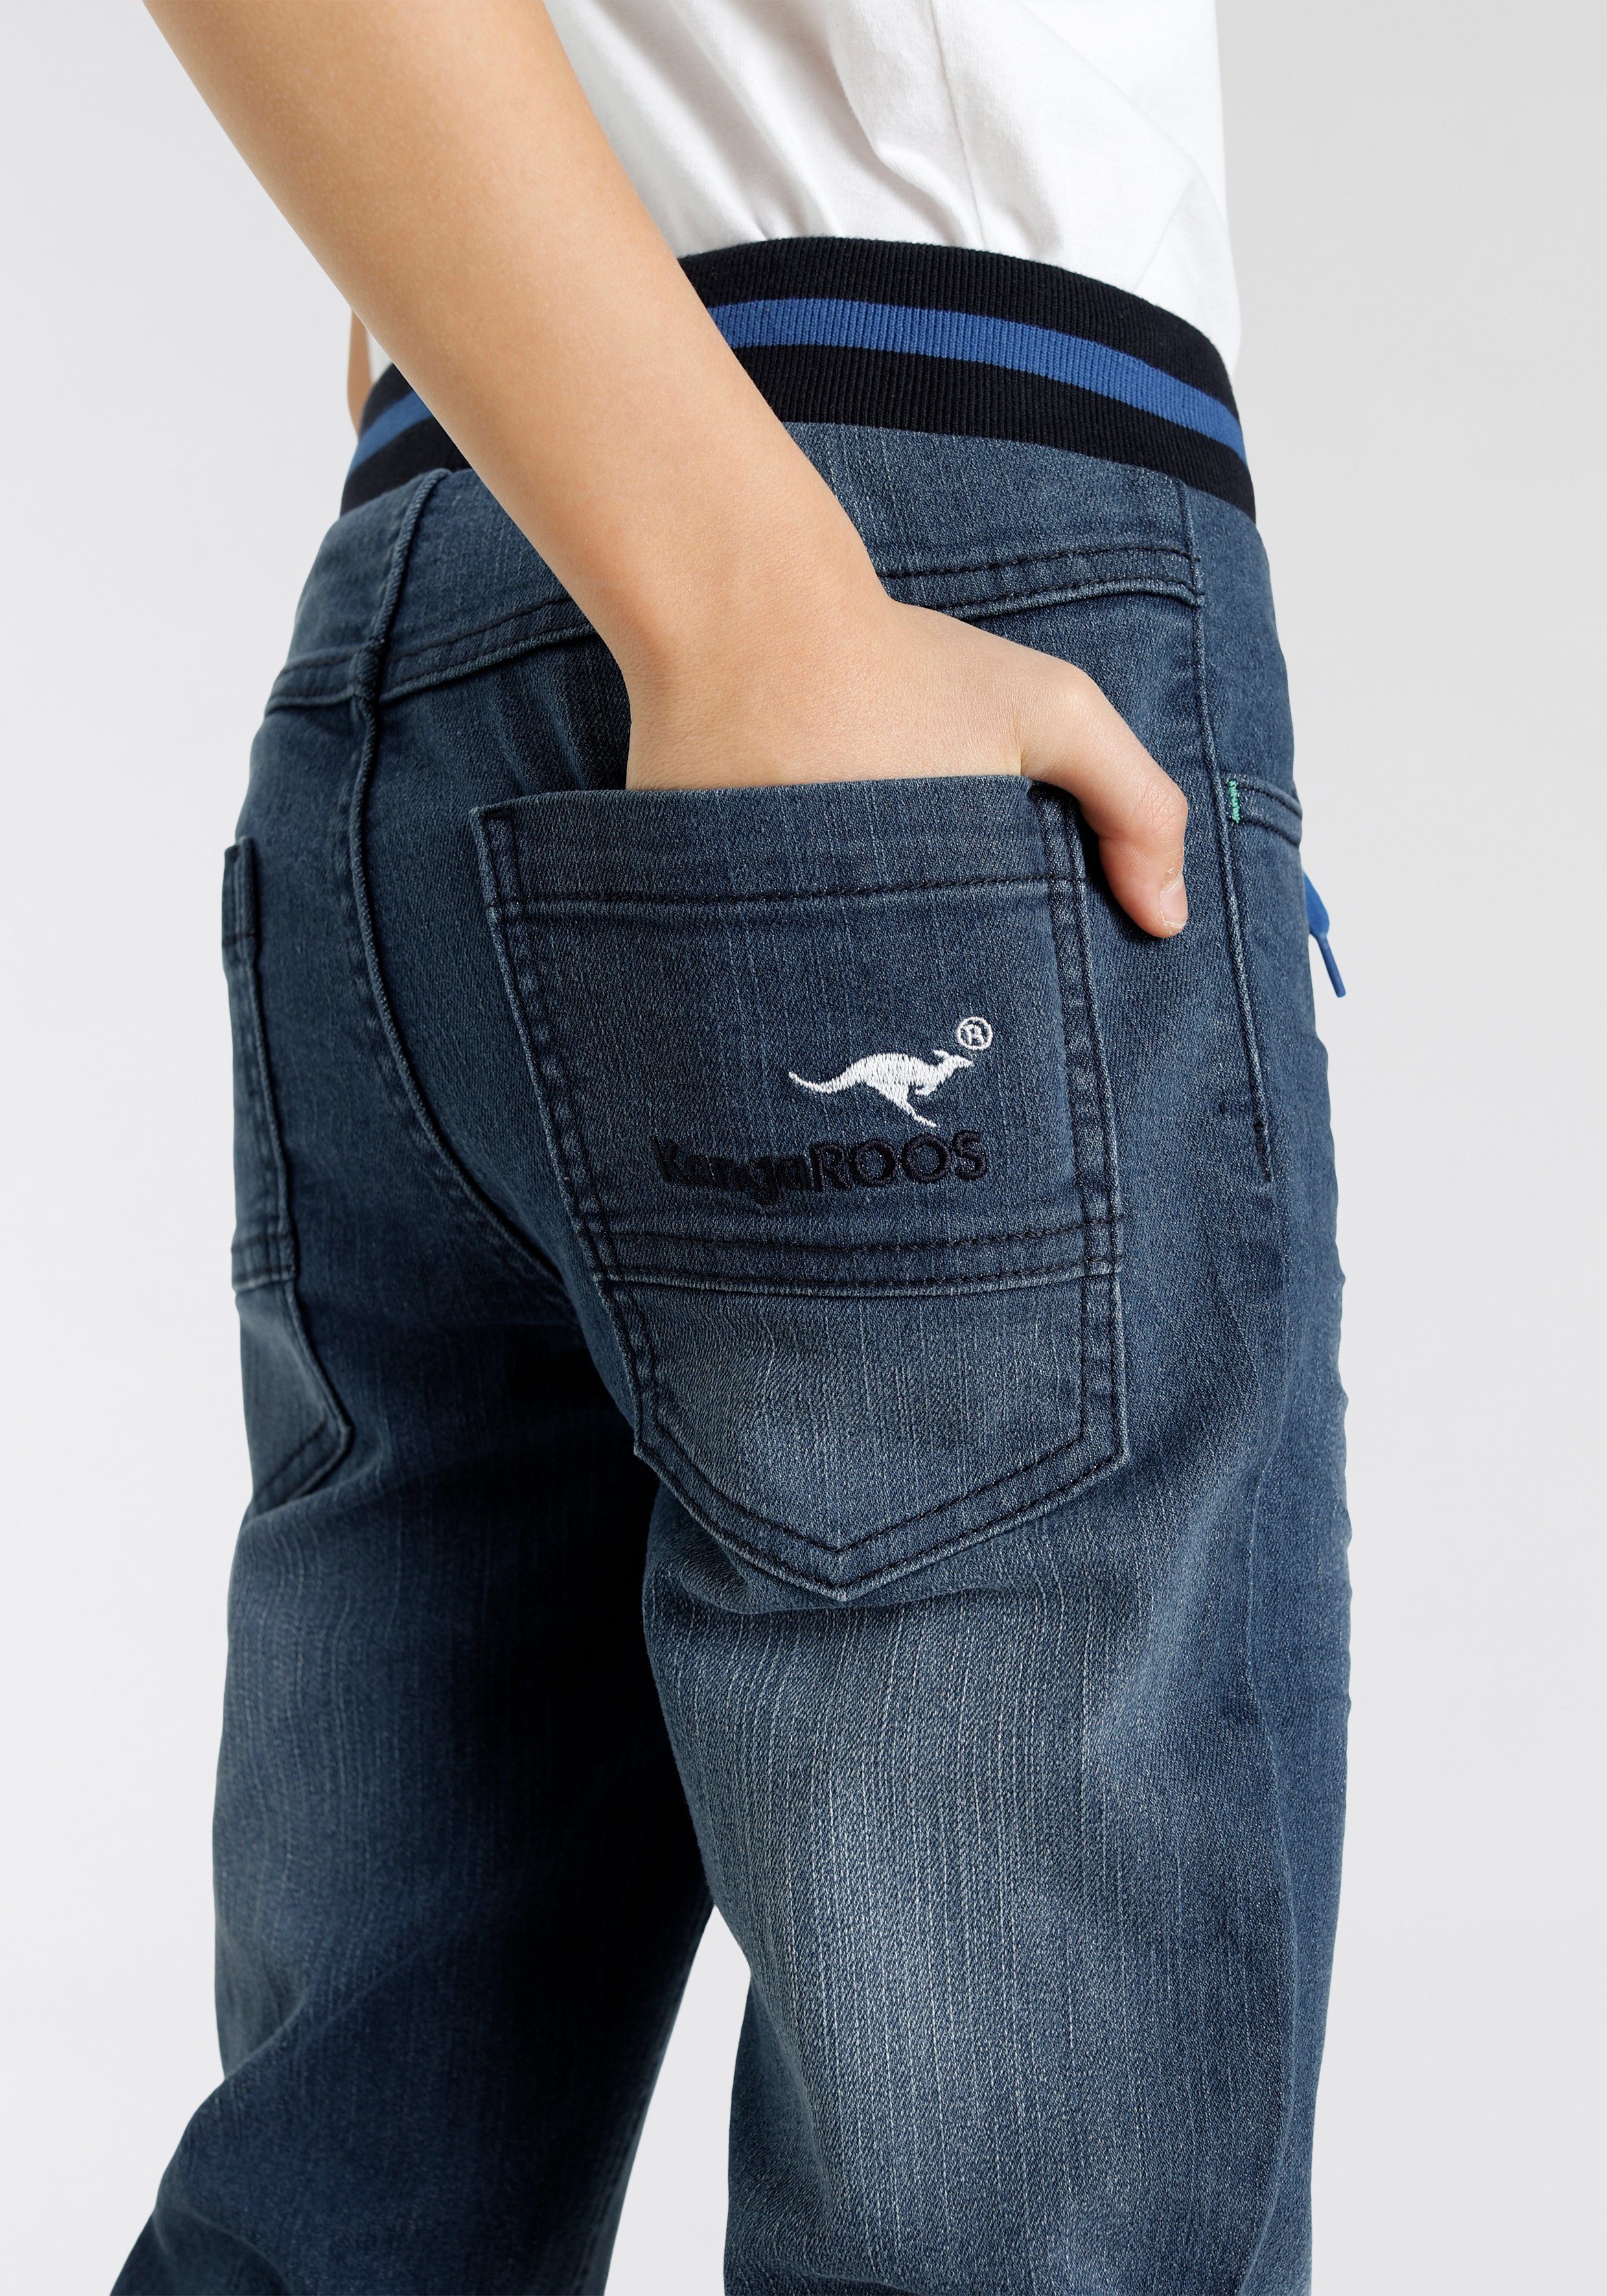 KangaROOS Stretch-Jeans Denim in authentischer Waschung